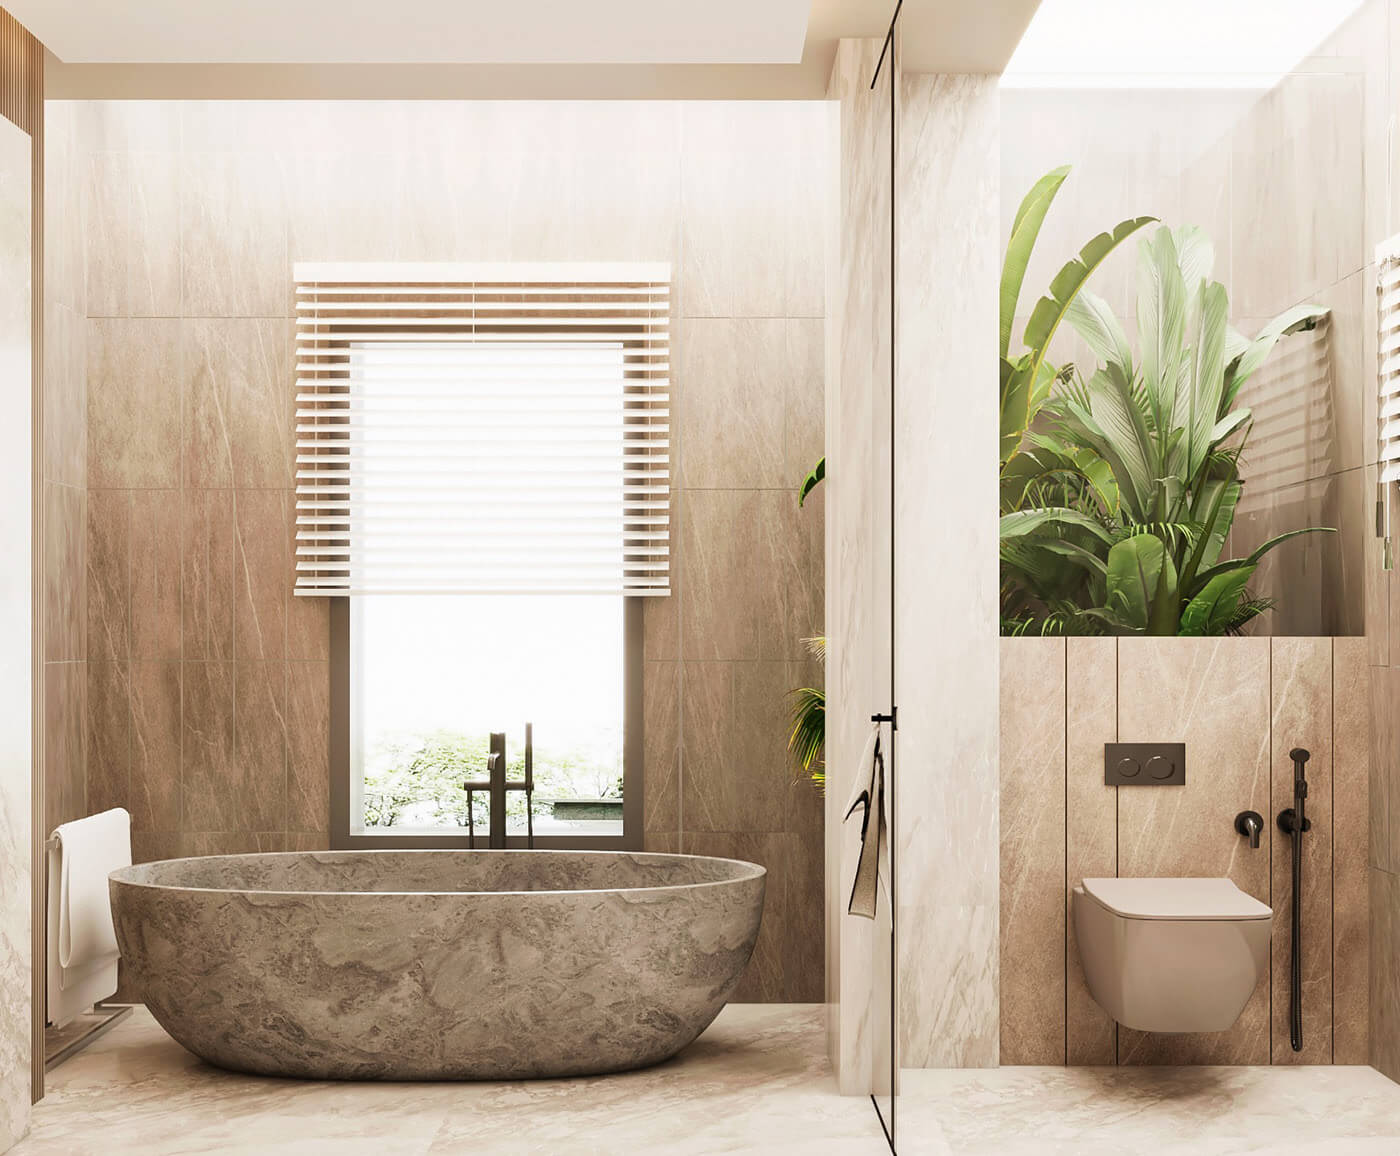 Nếu bạn đang muốn tìm kiếm một giải pháp cho phòng tắm của mình. Hãy tìm đến thiết kế nhà tắm có bồn tắm sang trọng - một không gian lý tưởng để thư giãn và thưởng thức cuộc sống. Với những thiết kế tinh tế và đẳng cấp, bạn sẽ cảm thấy rất thoải mái và thư giãn tại không gian này.